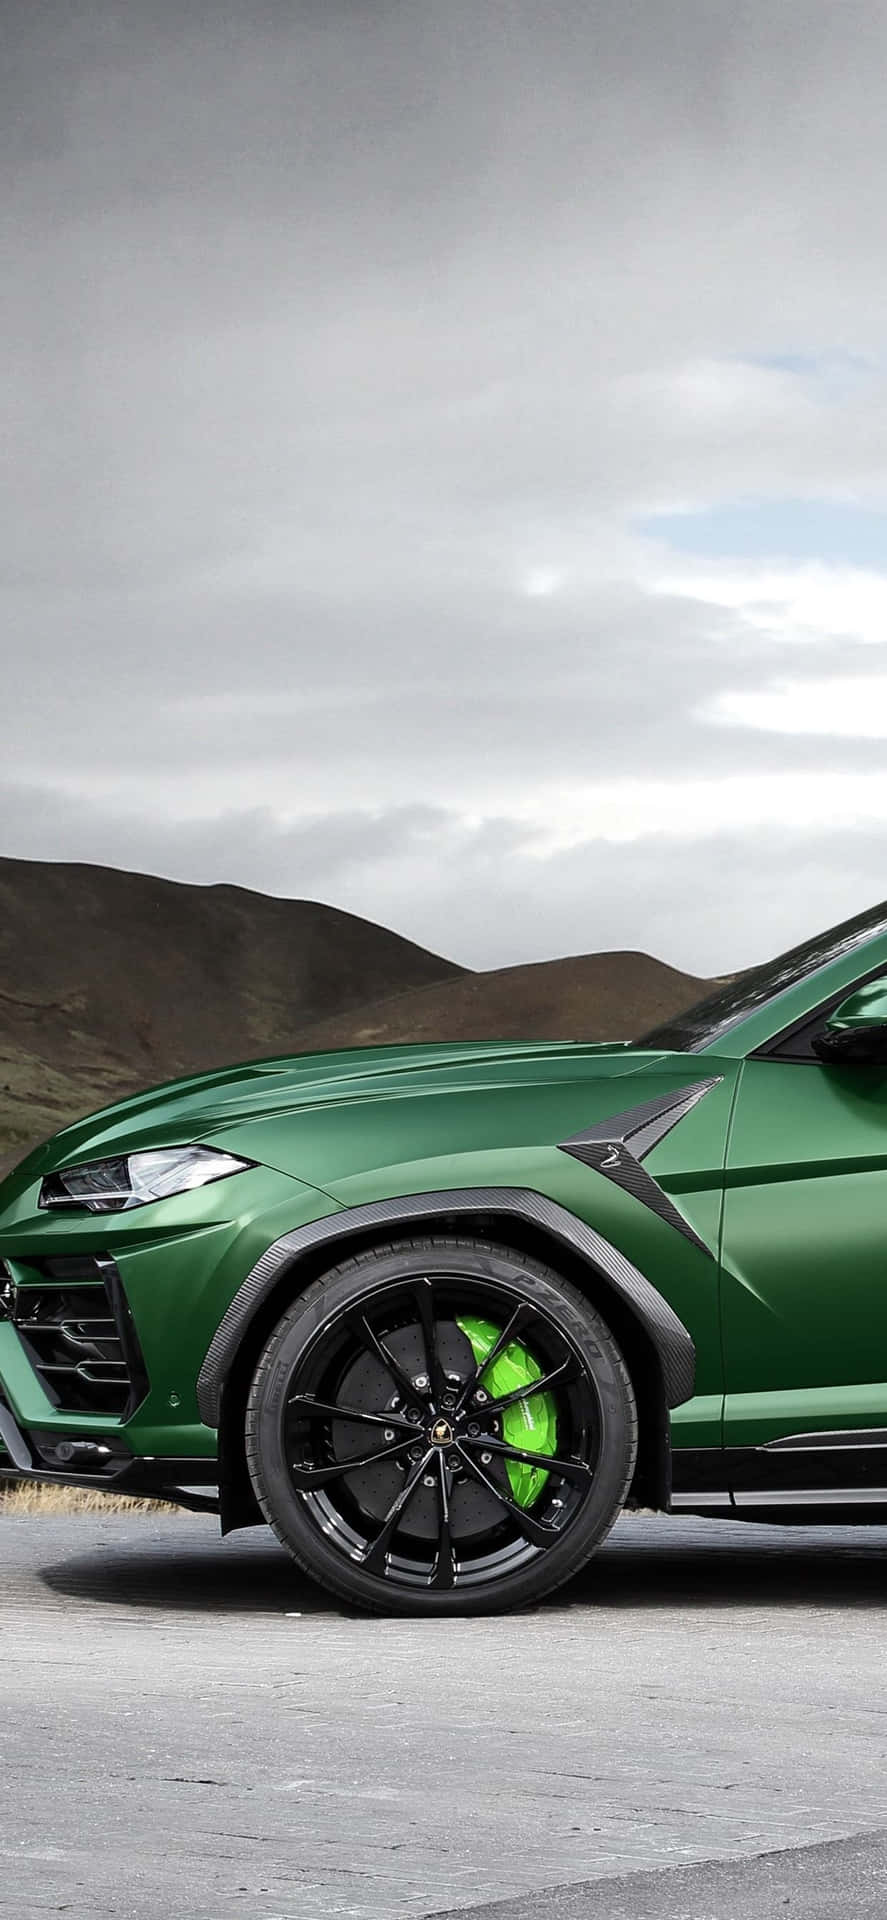 Bildder Veloce Lamborghini Präsentiert Sein Einzigartig Atemberaubendes Grün Mit Verlaufsdetails Wallpaper